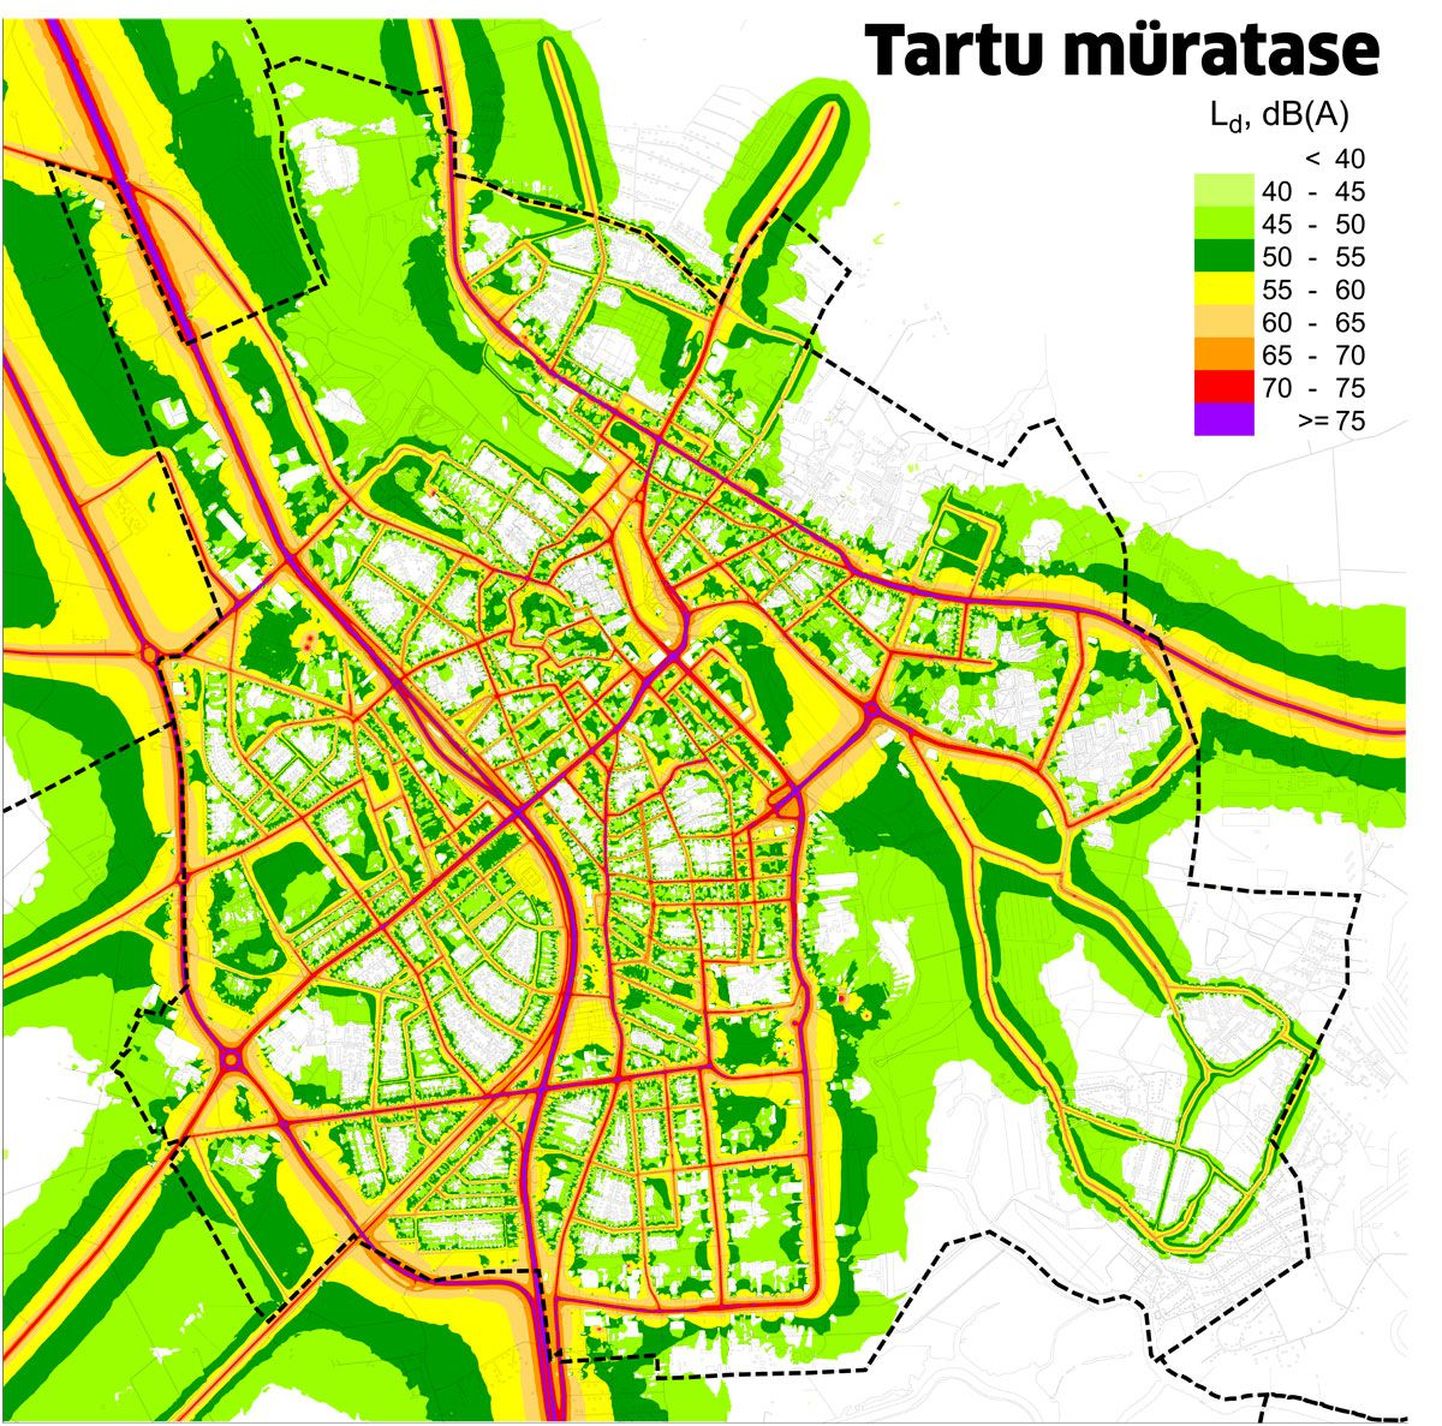 Tartu linna välisõhu strateegiliselt mürakaardilt on näha, kuidas jagunevad linna liiklus-, rongi- ja tööstusmüra. Kõige mürarikkamad piirkonnad on märgitud lilla ja kõige vaiksemad helerohelise värviga.